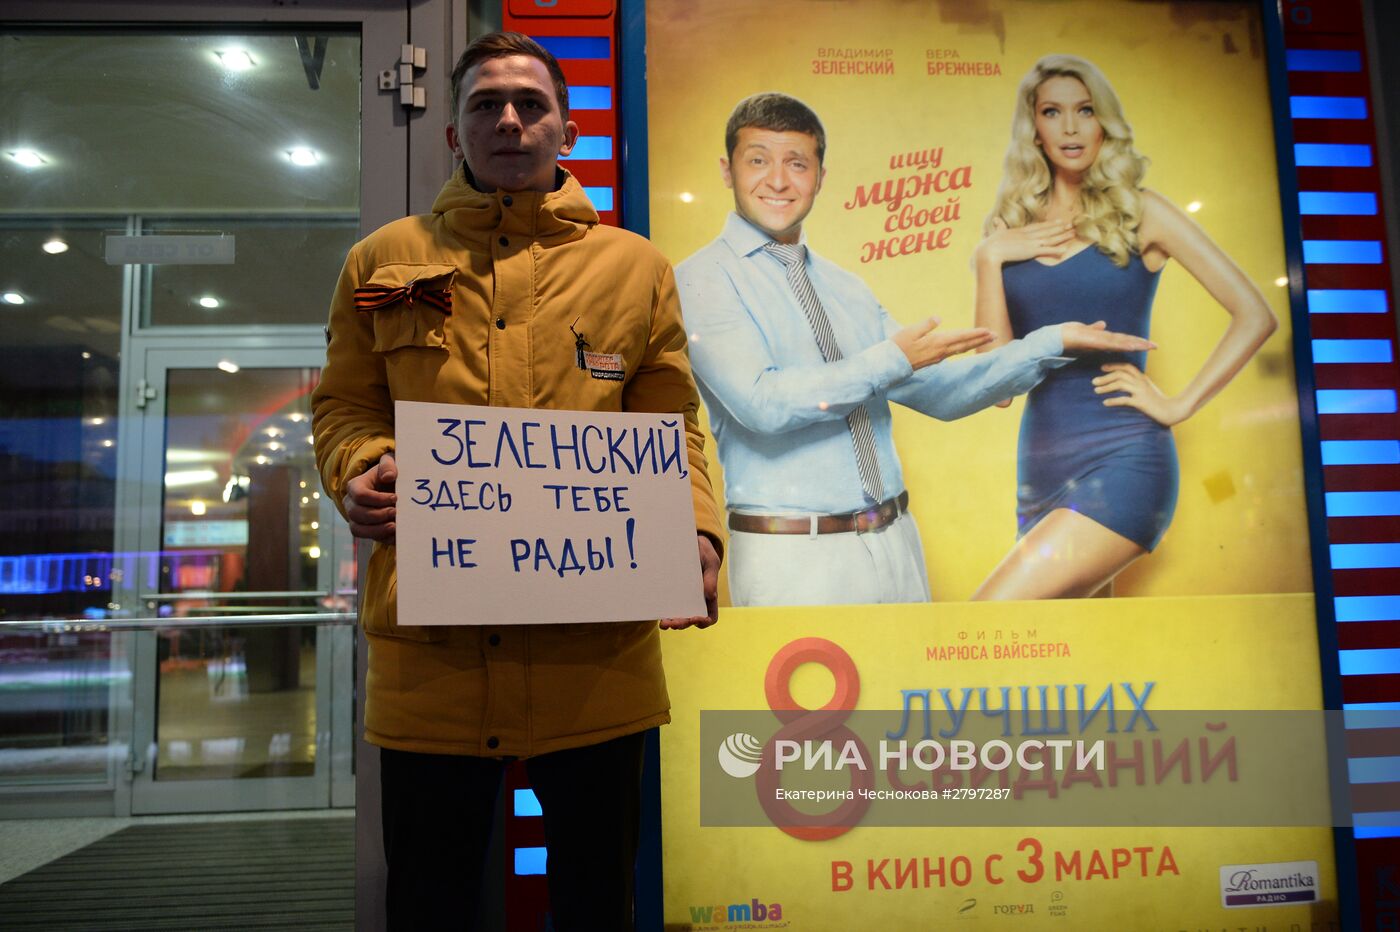 Акция протеста против показа фильма "8 лучших свиданий" в Москве